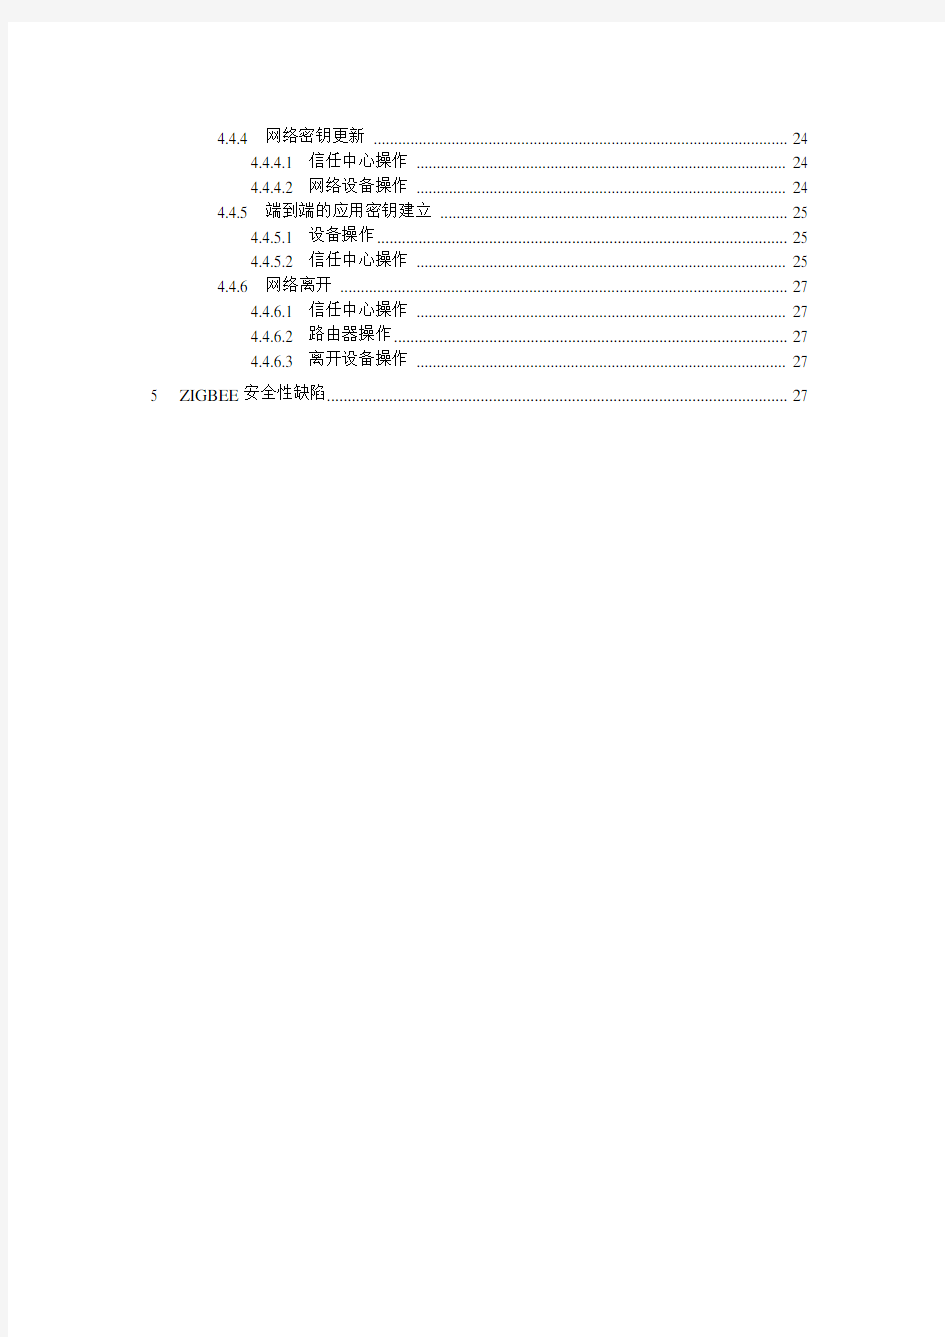 Zigbee安全规范与分析(中文翻译版)